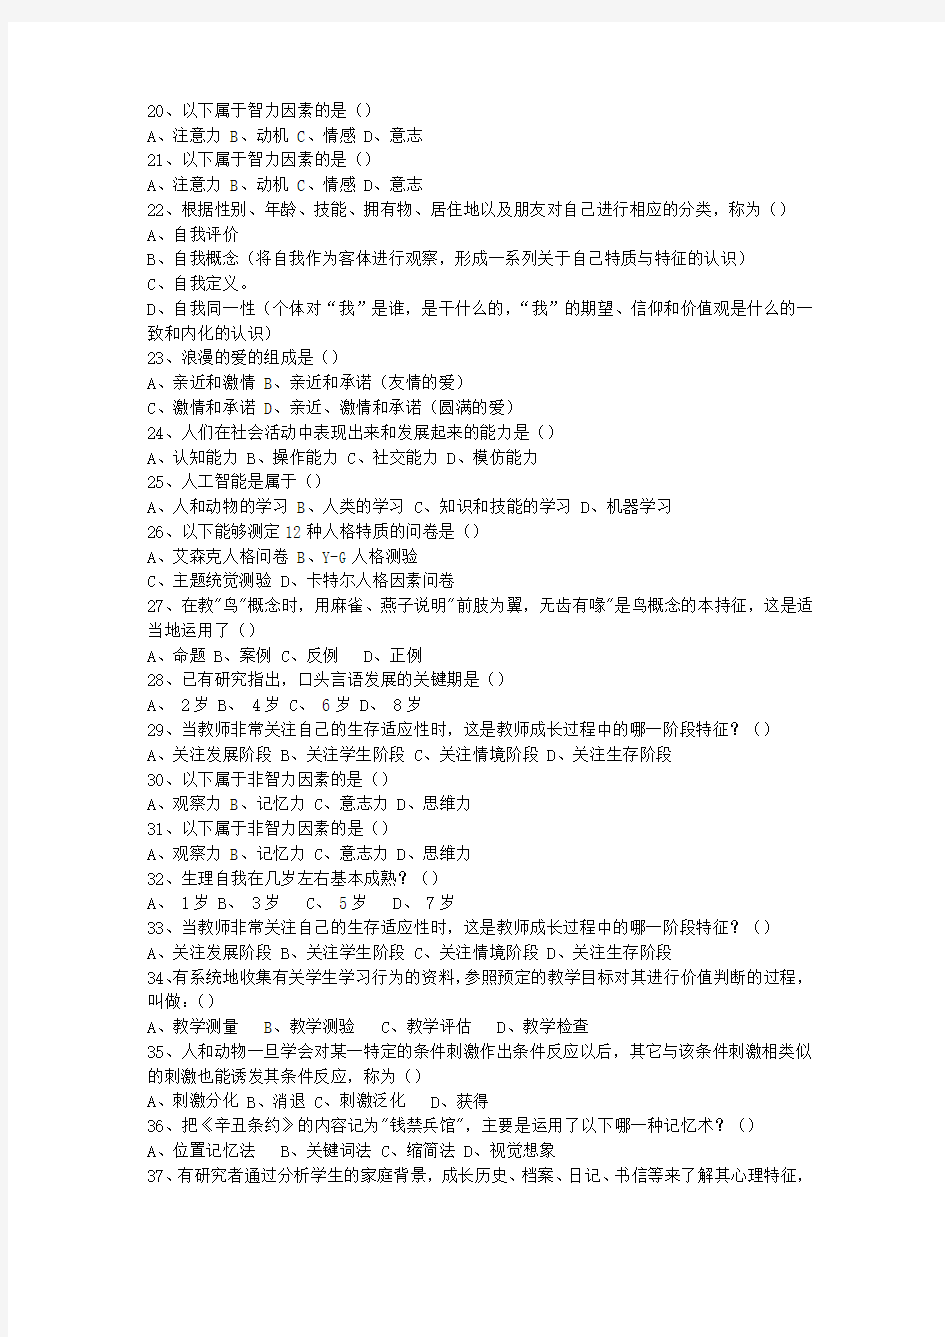 2012安徽省教师资格证考试笔试(必备资料)